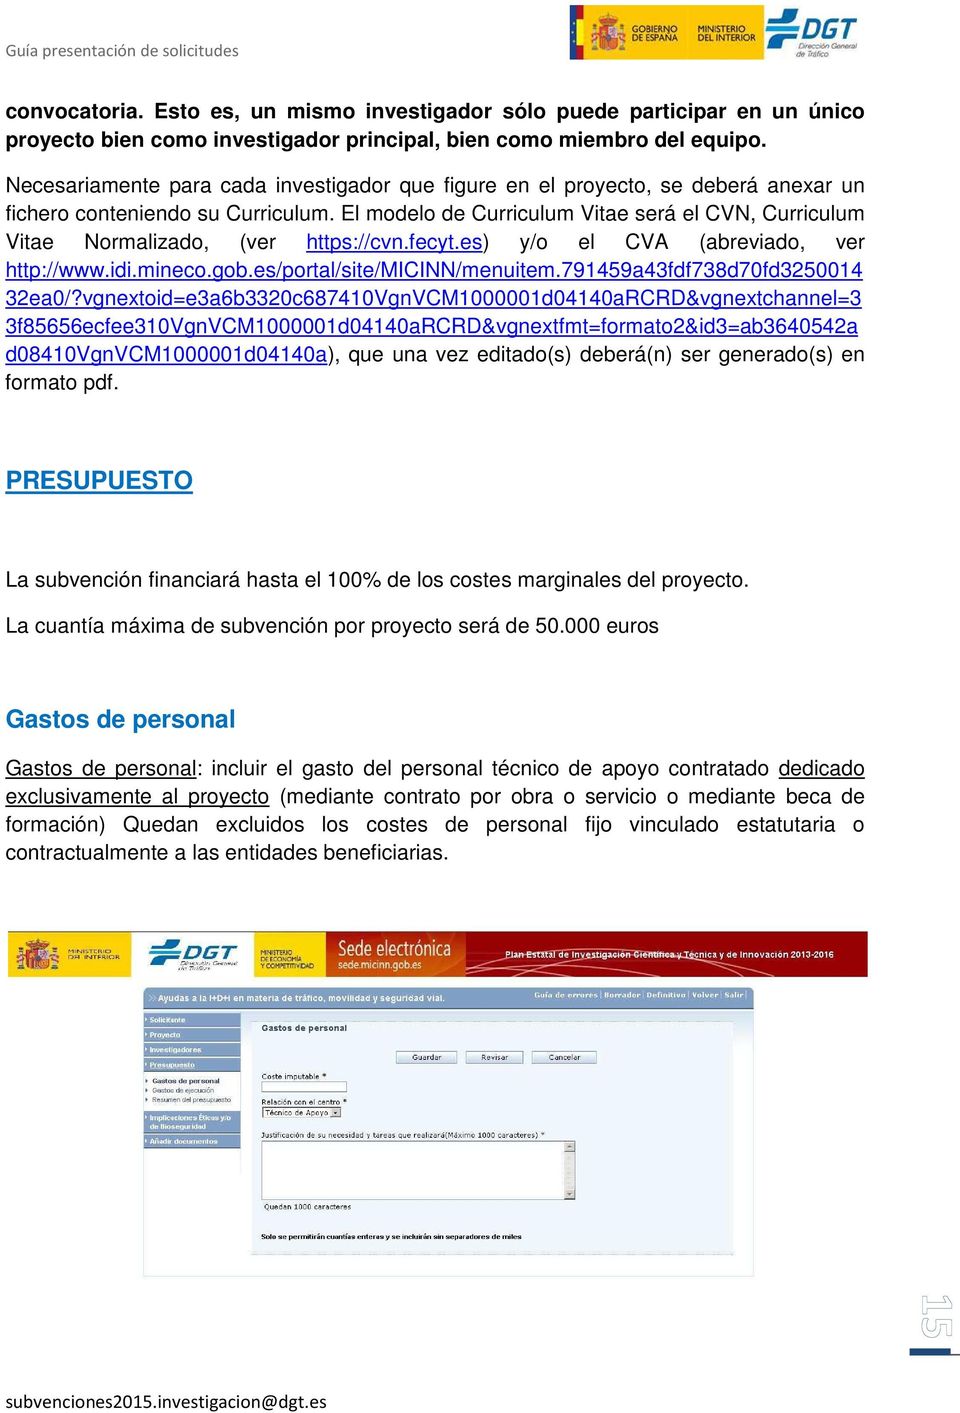 El modelo de Curriculum Vitae será el CVN, Curriculum Vitae Normalizado, (ver https://cvn.fecyt.es) y/o el CVA (abreviado, ver http://www.idi.mineco.gob.es/portal/site/micinn/menuitem.